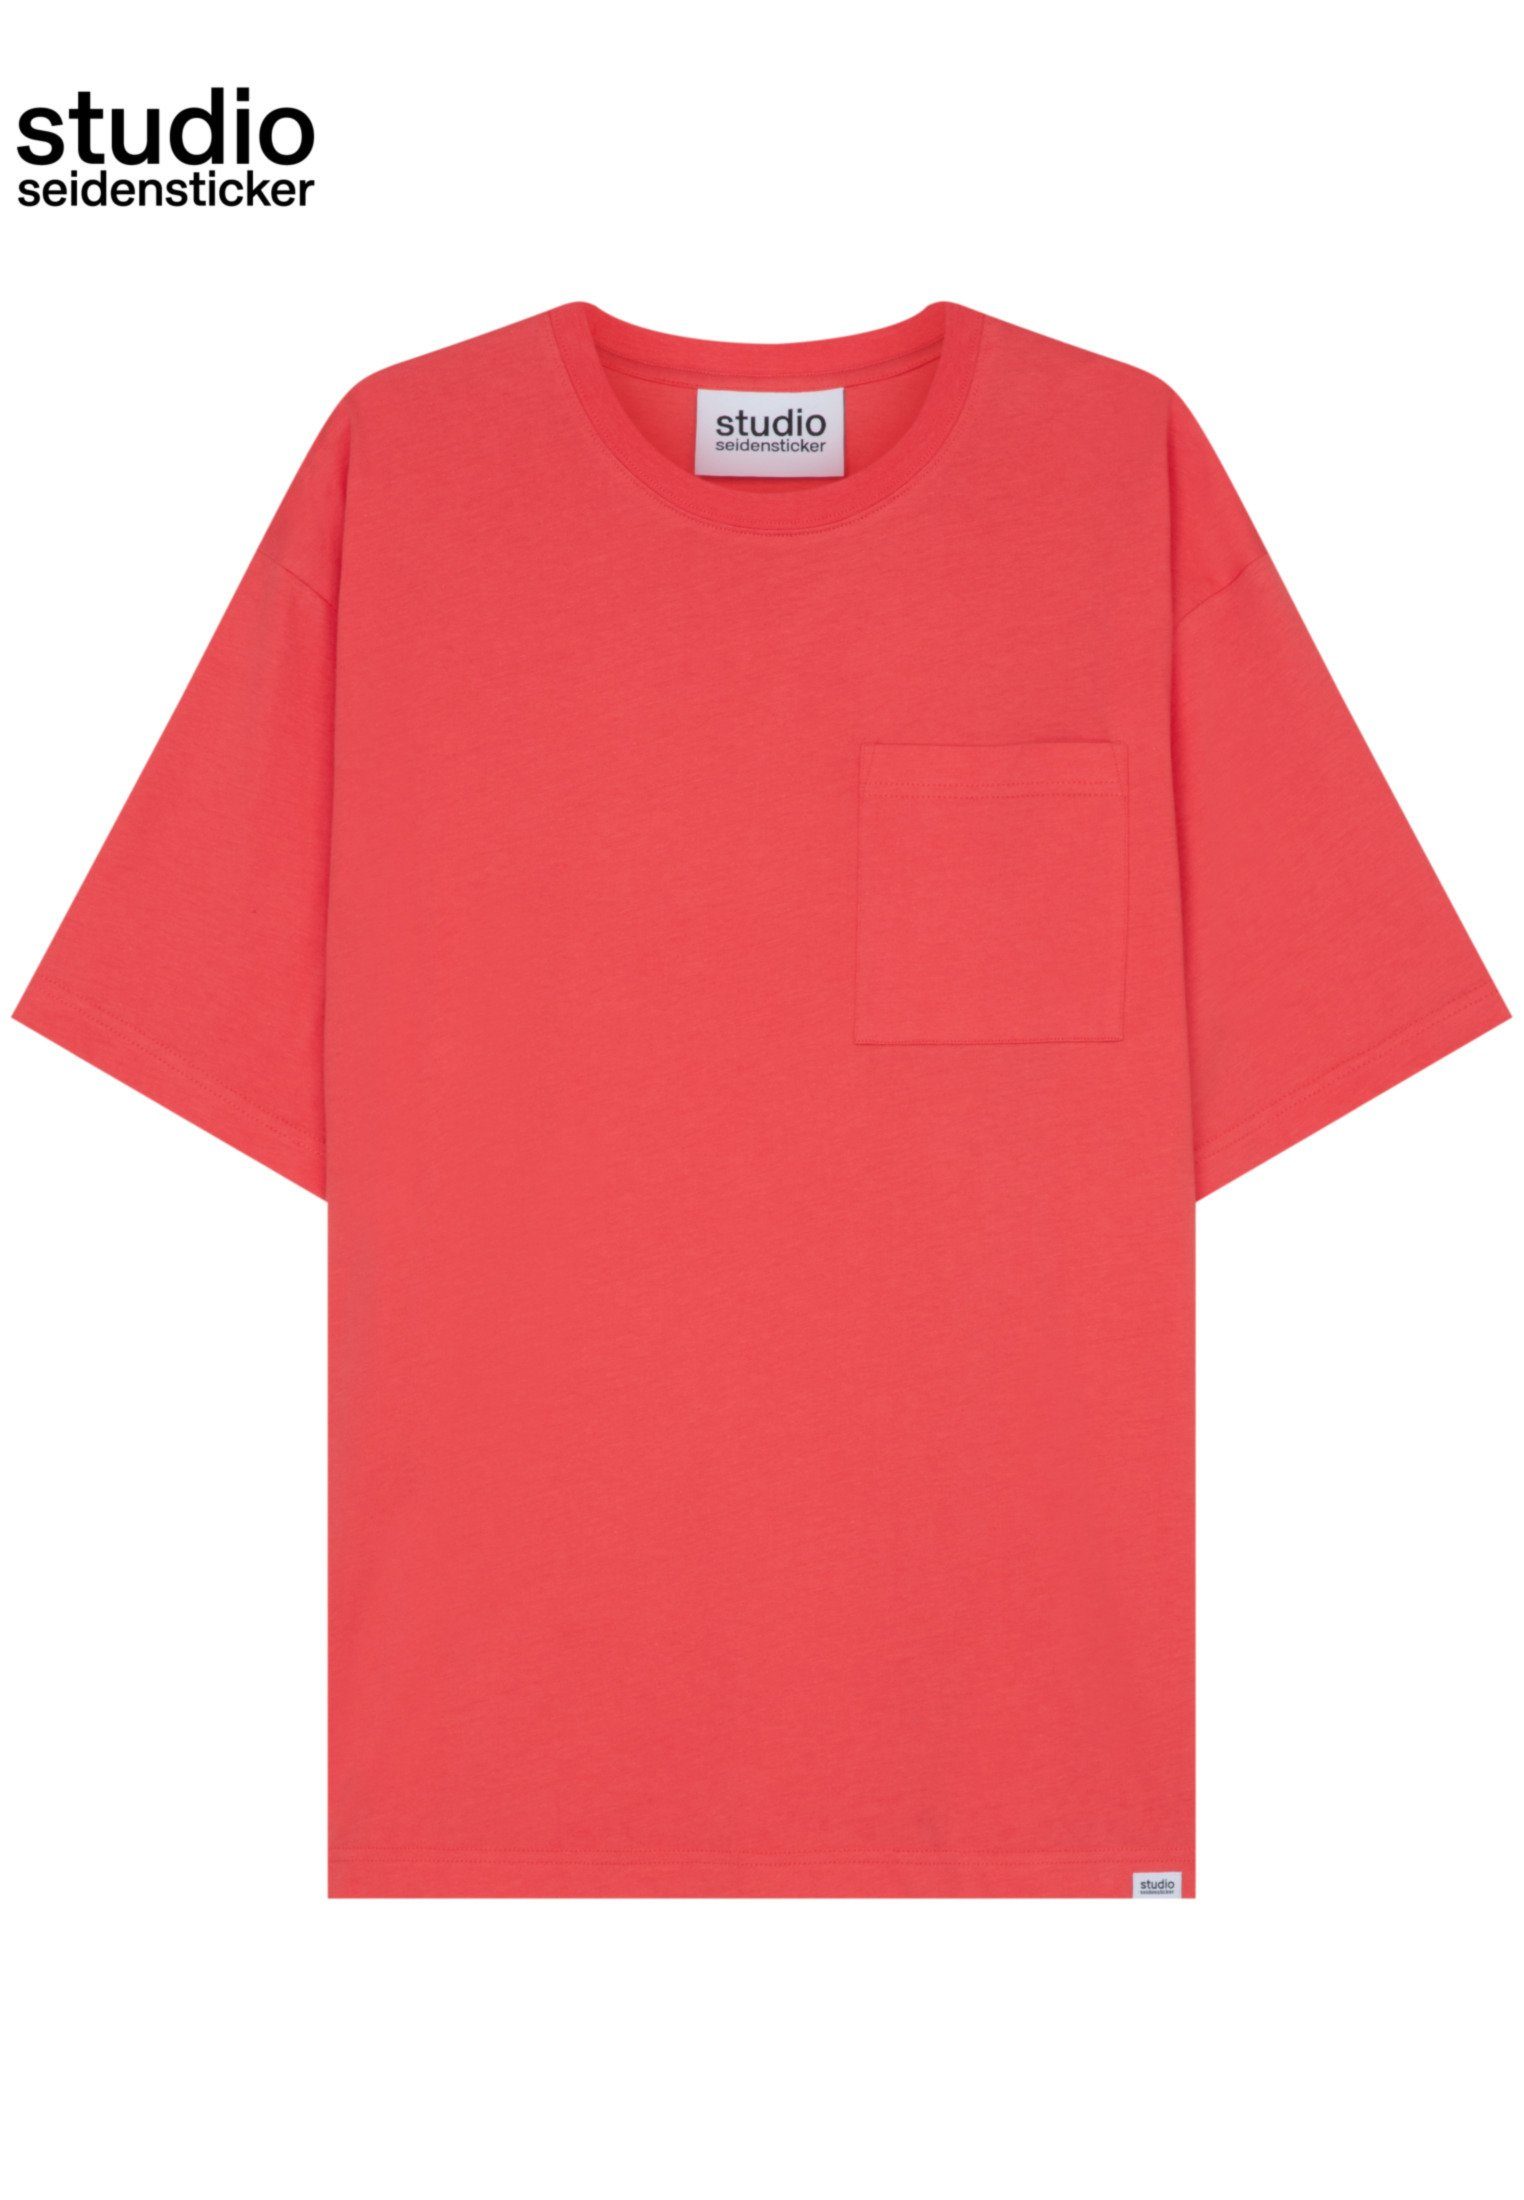 seidensticker Rosa/Pink Uni T-Shirt Studio Rundhals studio Kurzarm